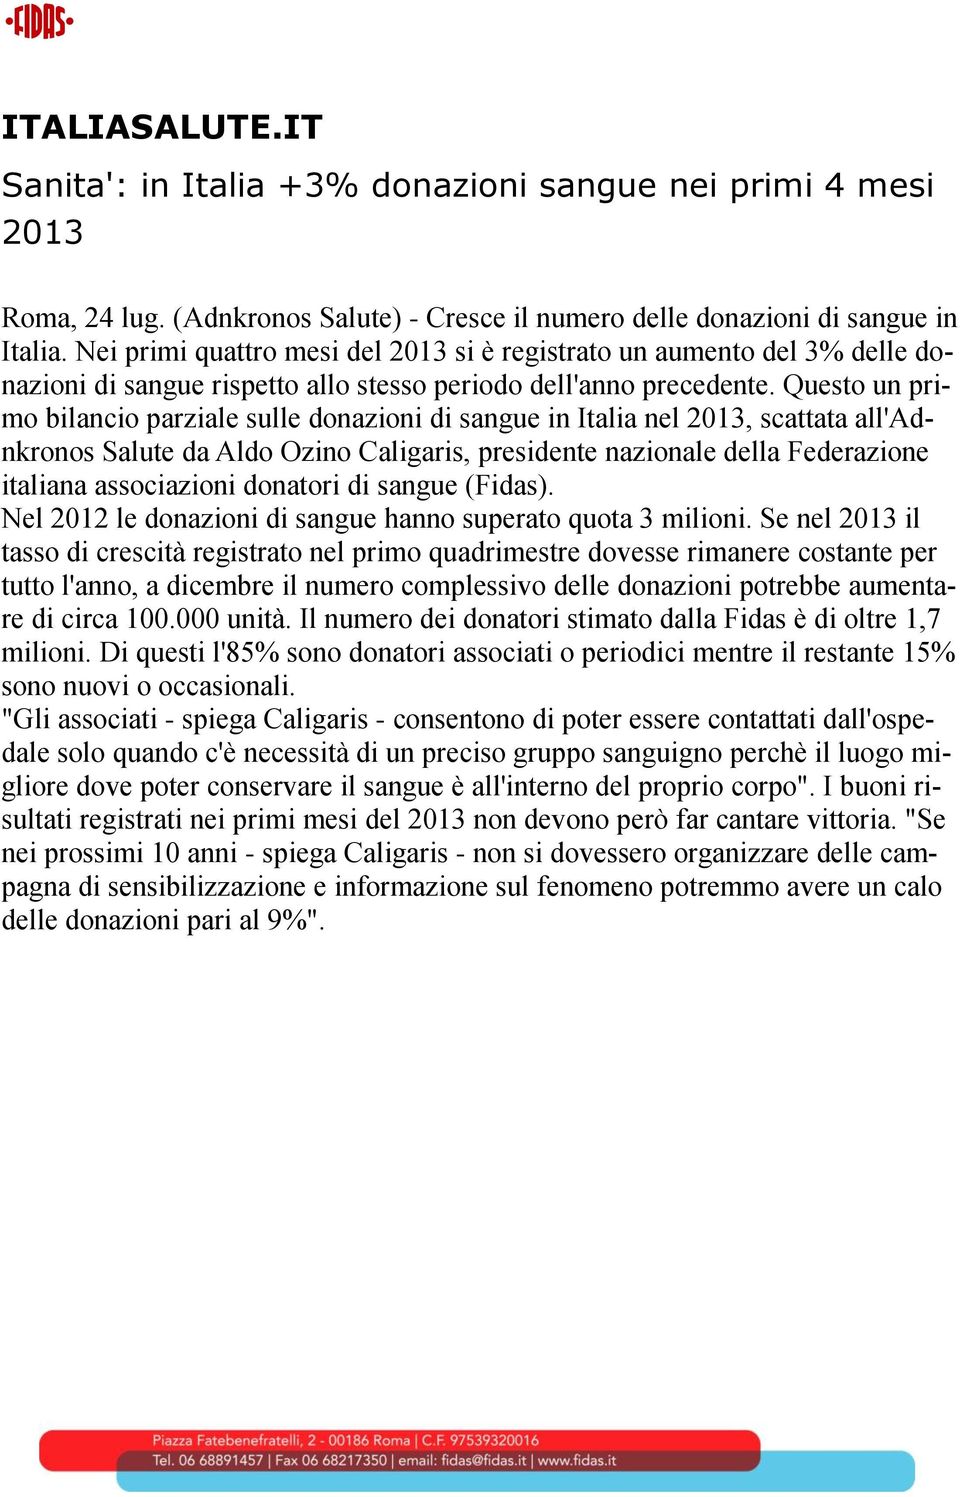 Questo un primo bilancio parziale sulle donazioni di sangue in Italia nel 2013, scattata all'adnkronos Salute da Aldo Ozino Caligaris, presidente nazionale della Federazione italiana associazioni